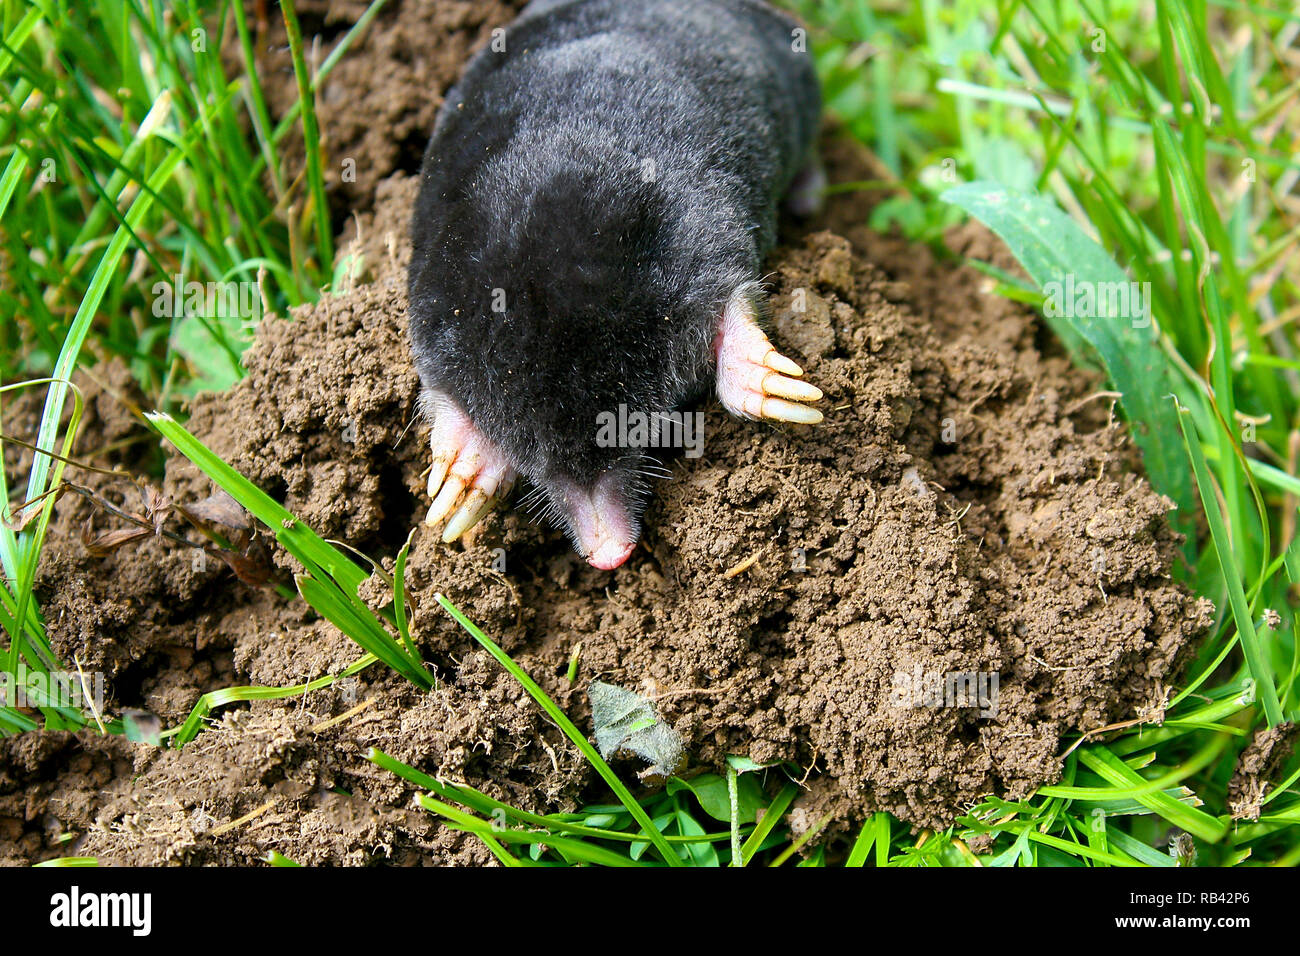 Unione mole (Talpa europaea) è un mammifero dell'ordine Eulipotyphla. È anche noto come il comune mole e la mole del nord. Foto Stock